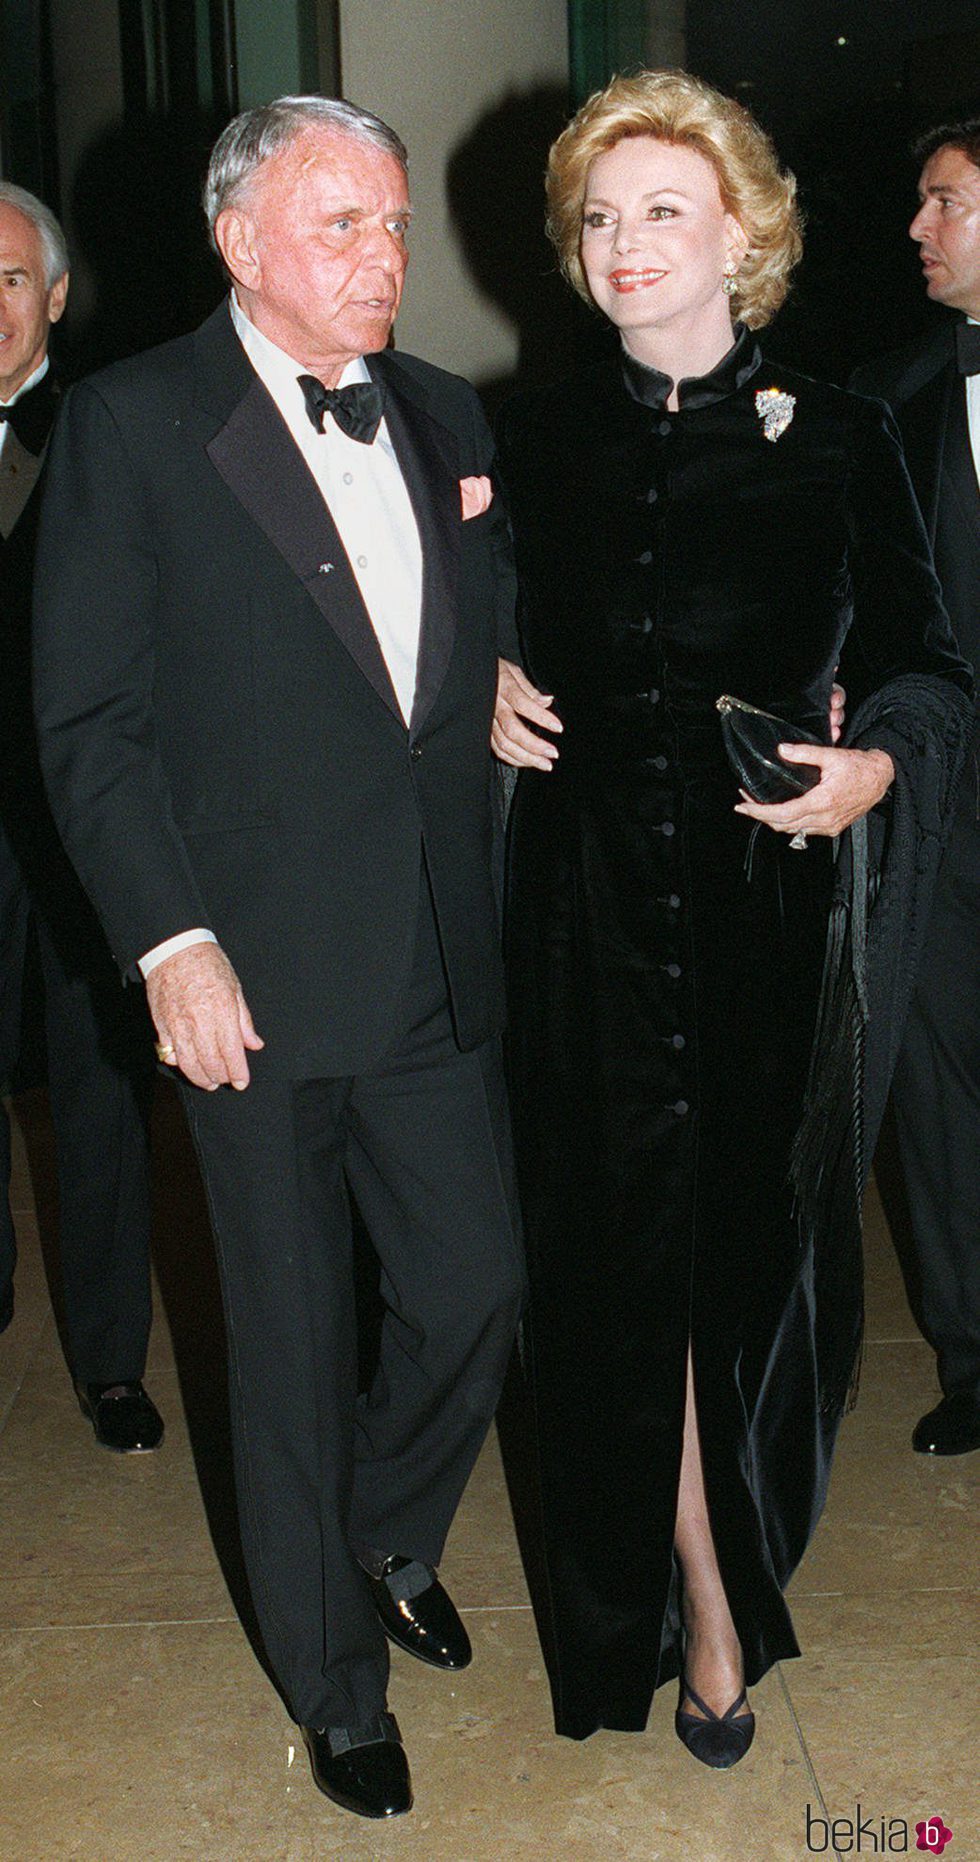 Frank Sinatra y Barbara Sinatra llegando a un evento